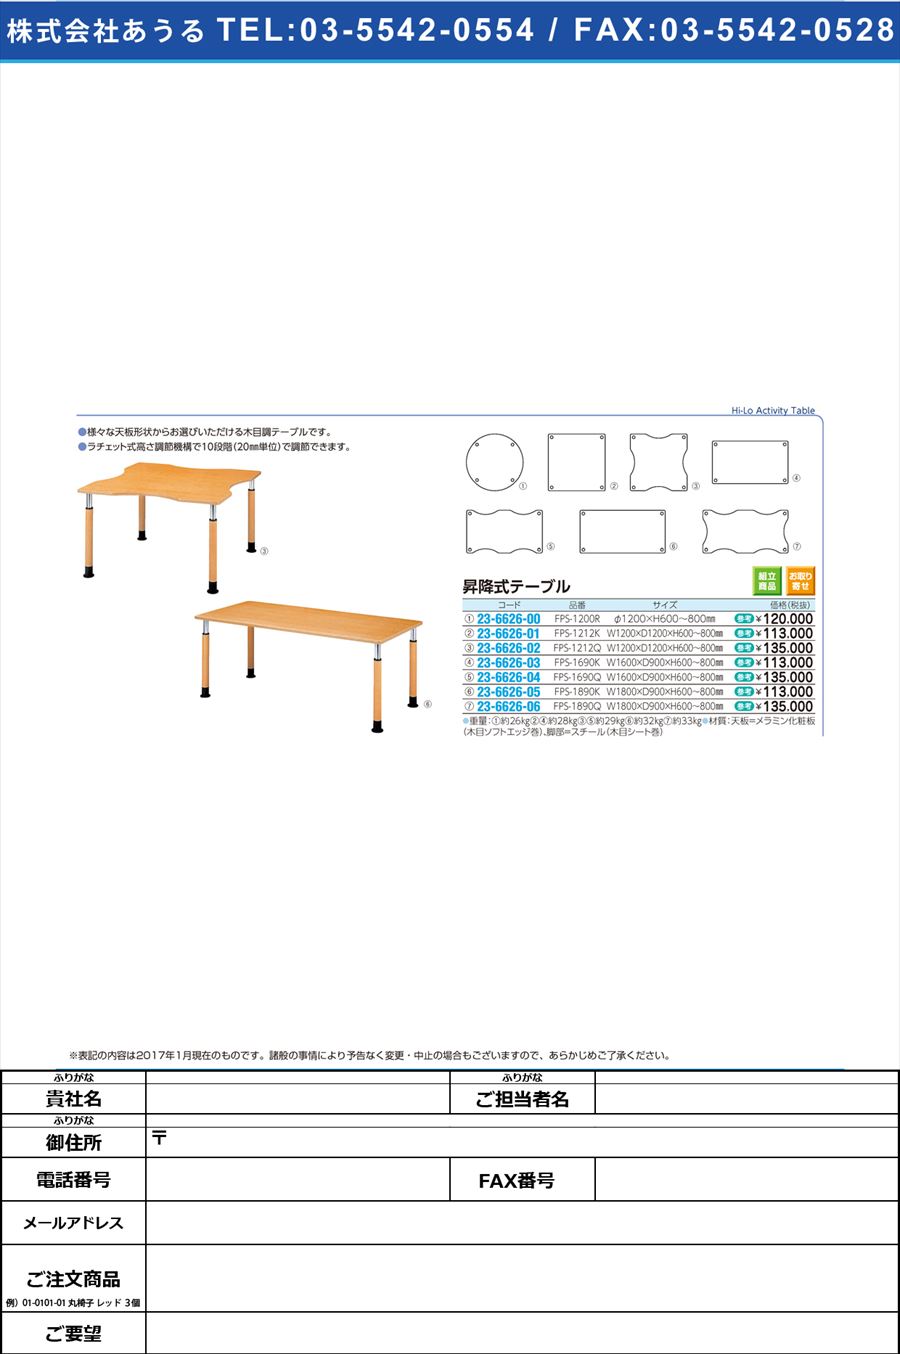 (23-6626-01)昇降式テーブル ｼｮｳｺｳｼｷﾃｰﾌﾞﾙ FPS-1212K(W120XD120)(23-6626-01)【1台単位】【2017年カタログ商品】